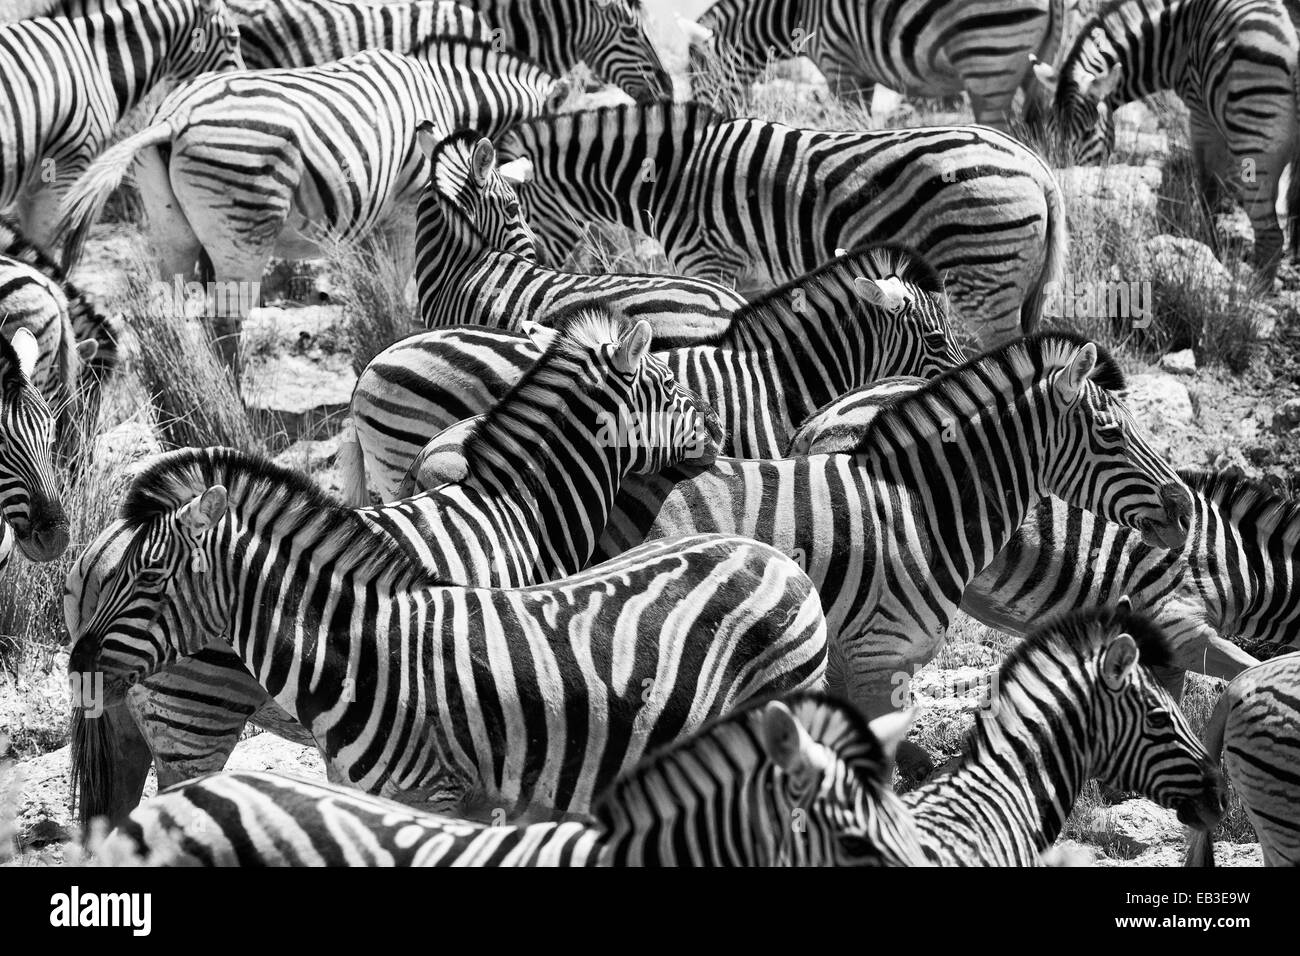 Namibia, Oshikoto Region, Omuthiya, Etosha-Pfanne, Zebras on prairie Stock Photo